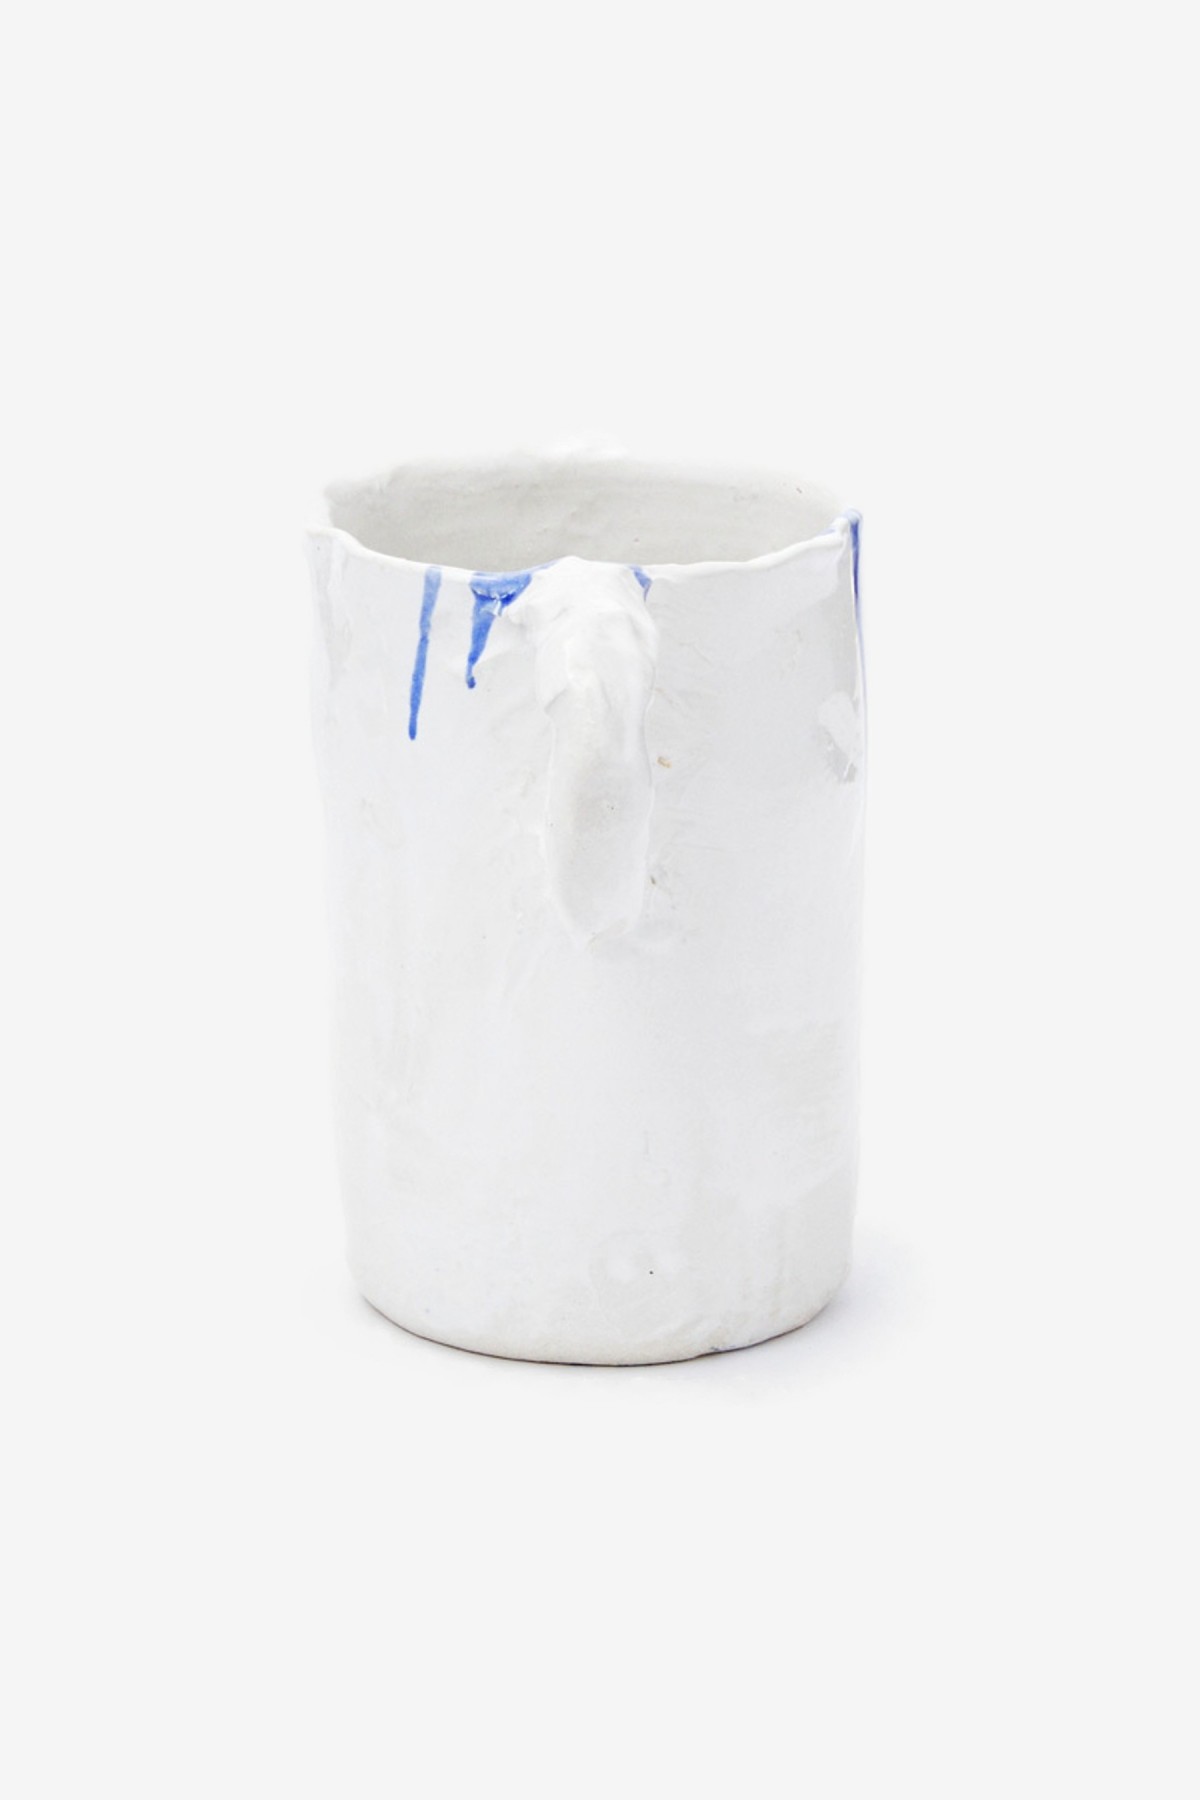 Niko June Studio Vase in White